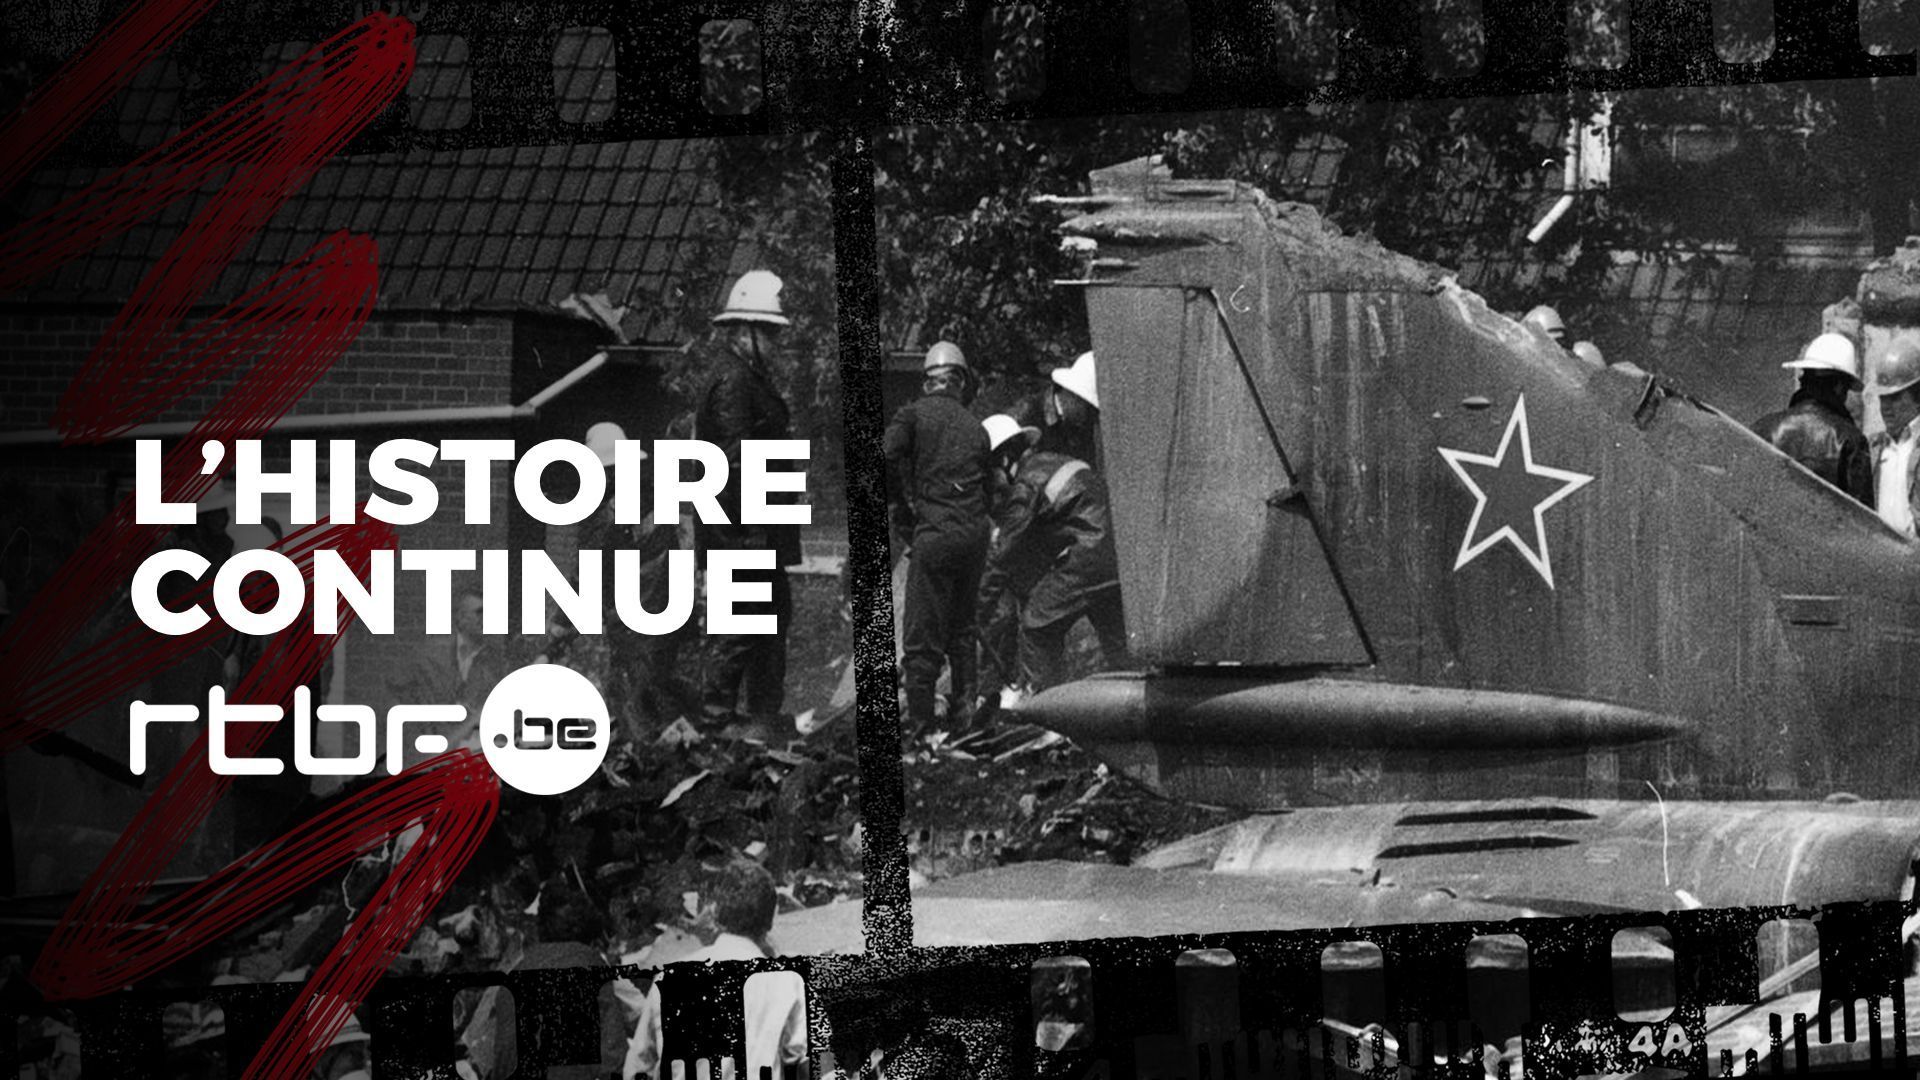 l-histoire-continue-1989-un-avion-militaire-sovietique-sans-pilote-a-bord-s-ecrase-en-belgique